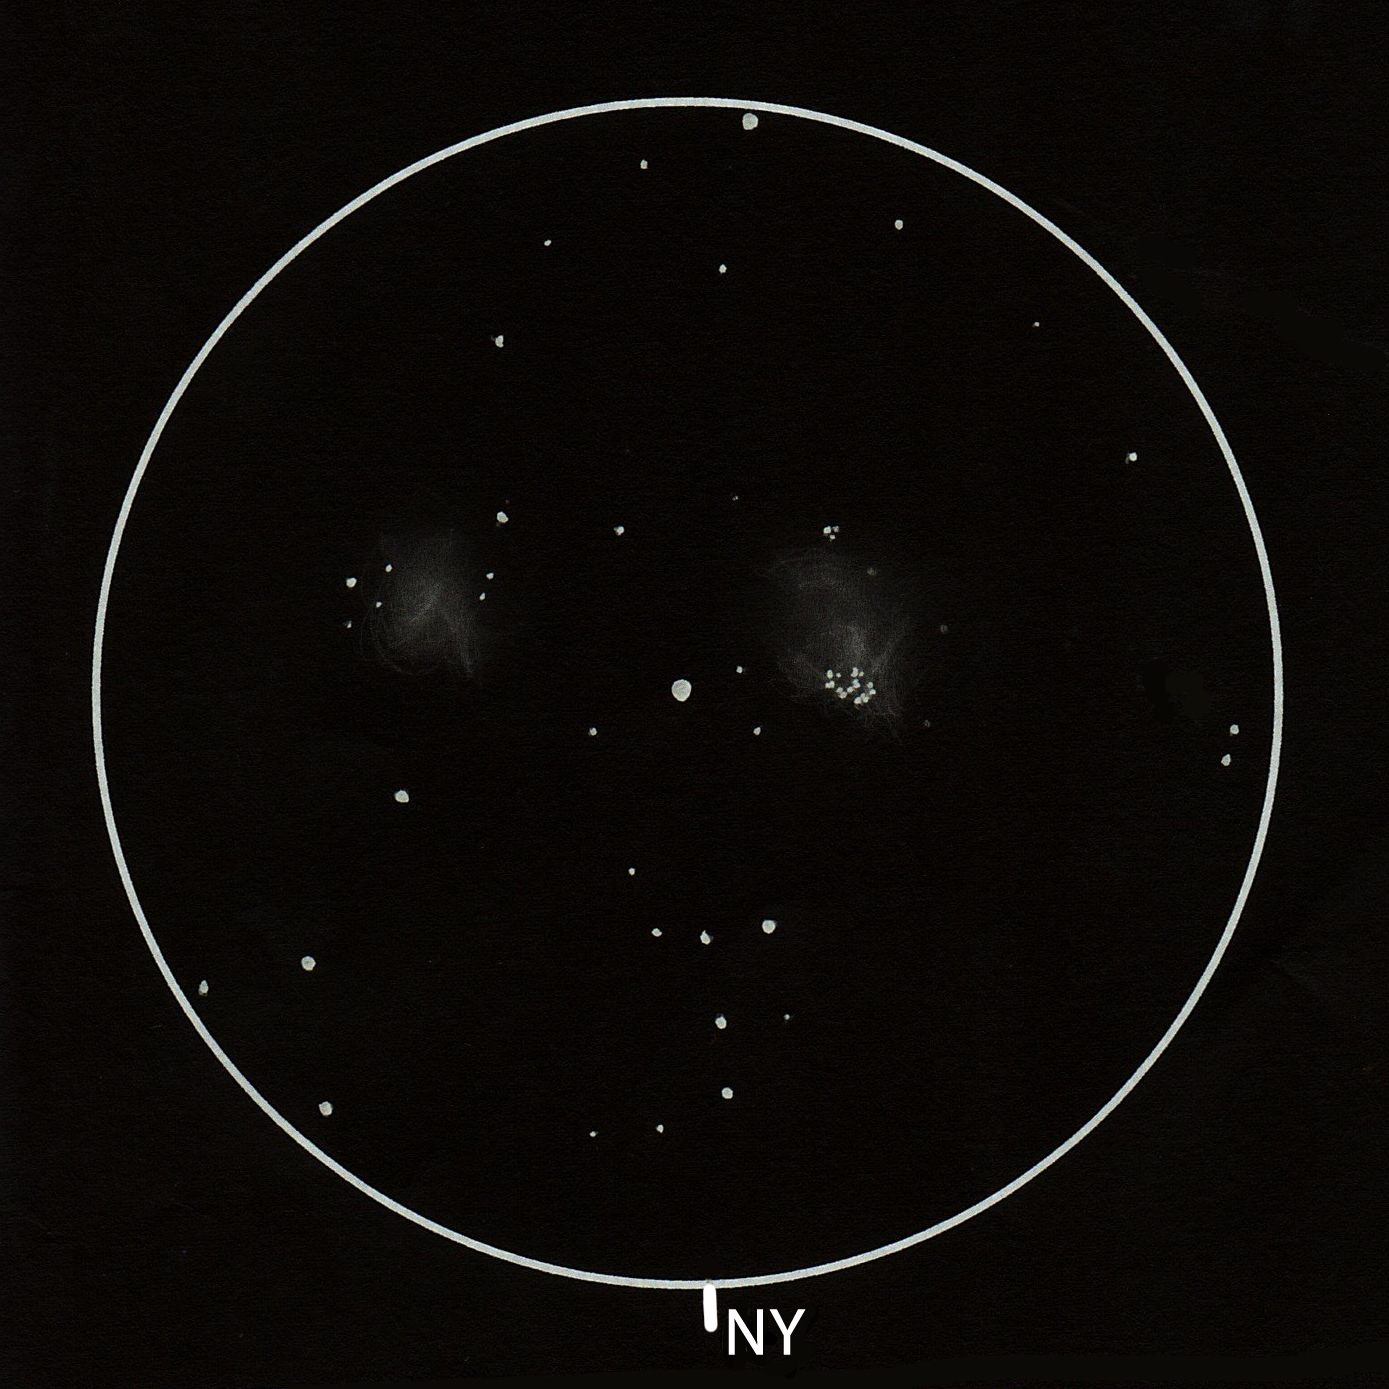 NGC 6939 NY (Cyg), NGC 6946 GX (Cep/Cyg)